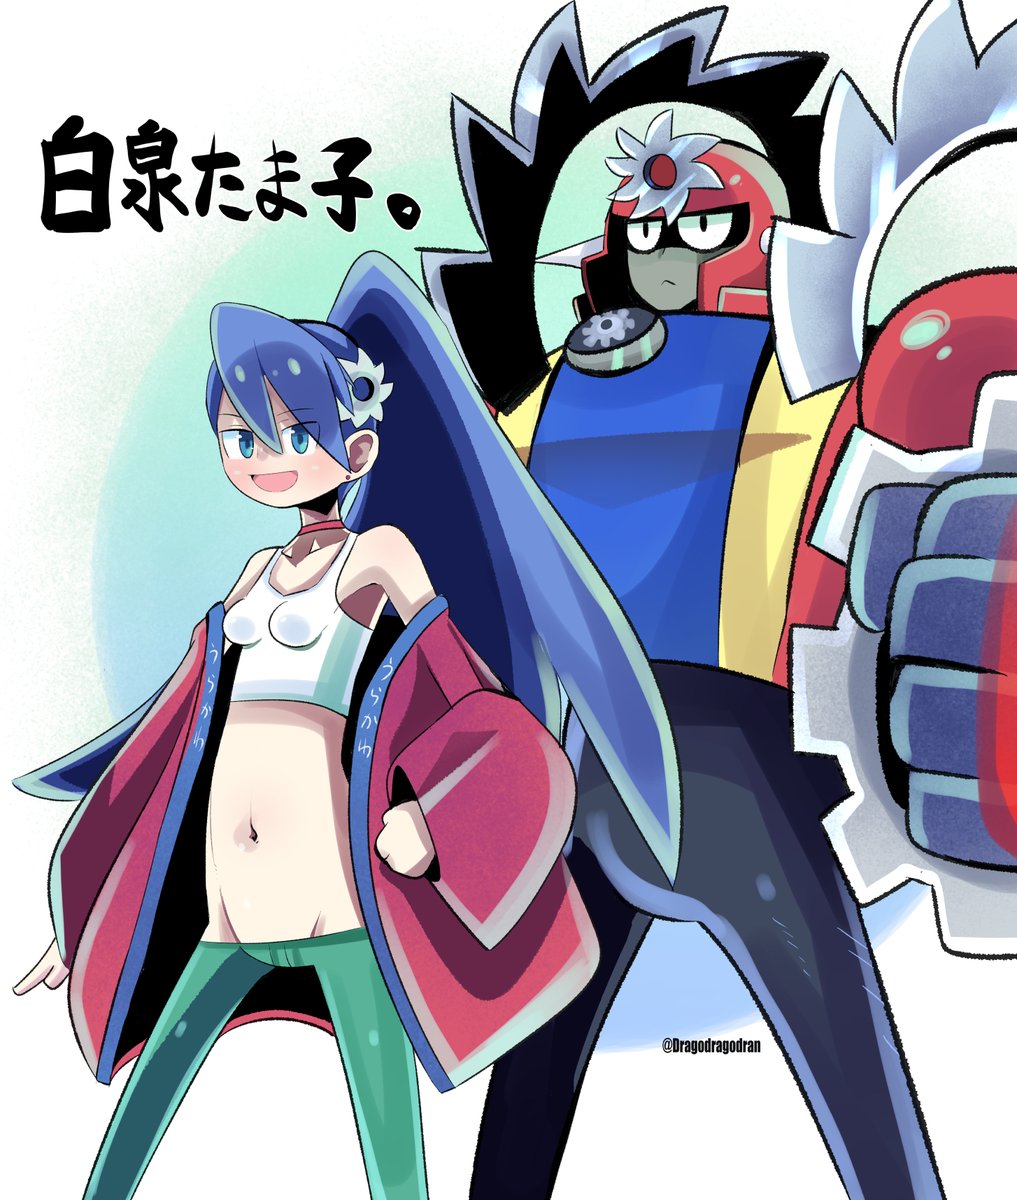 ロックマンエグゼ3 より 白泉たま子 。( Tamako Shiraizumi ) #ロックマン #ロックマンエグゼ #Megaman #MegaManBattleNetwork